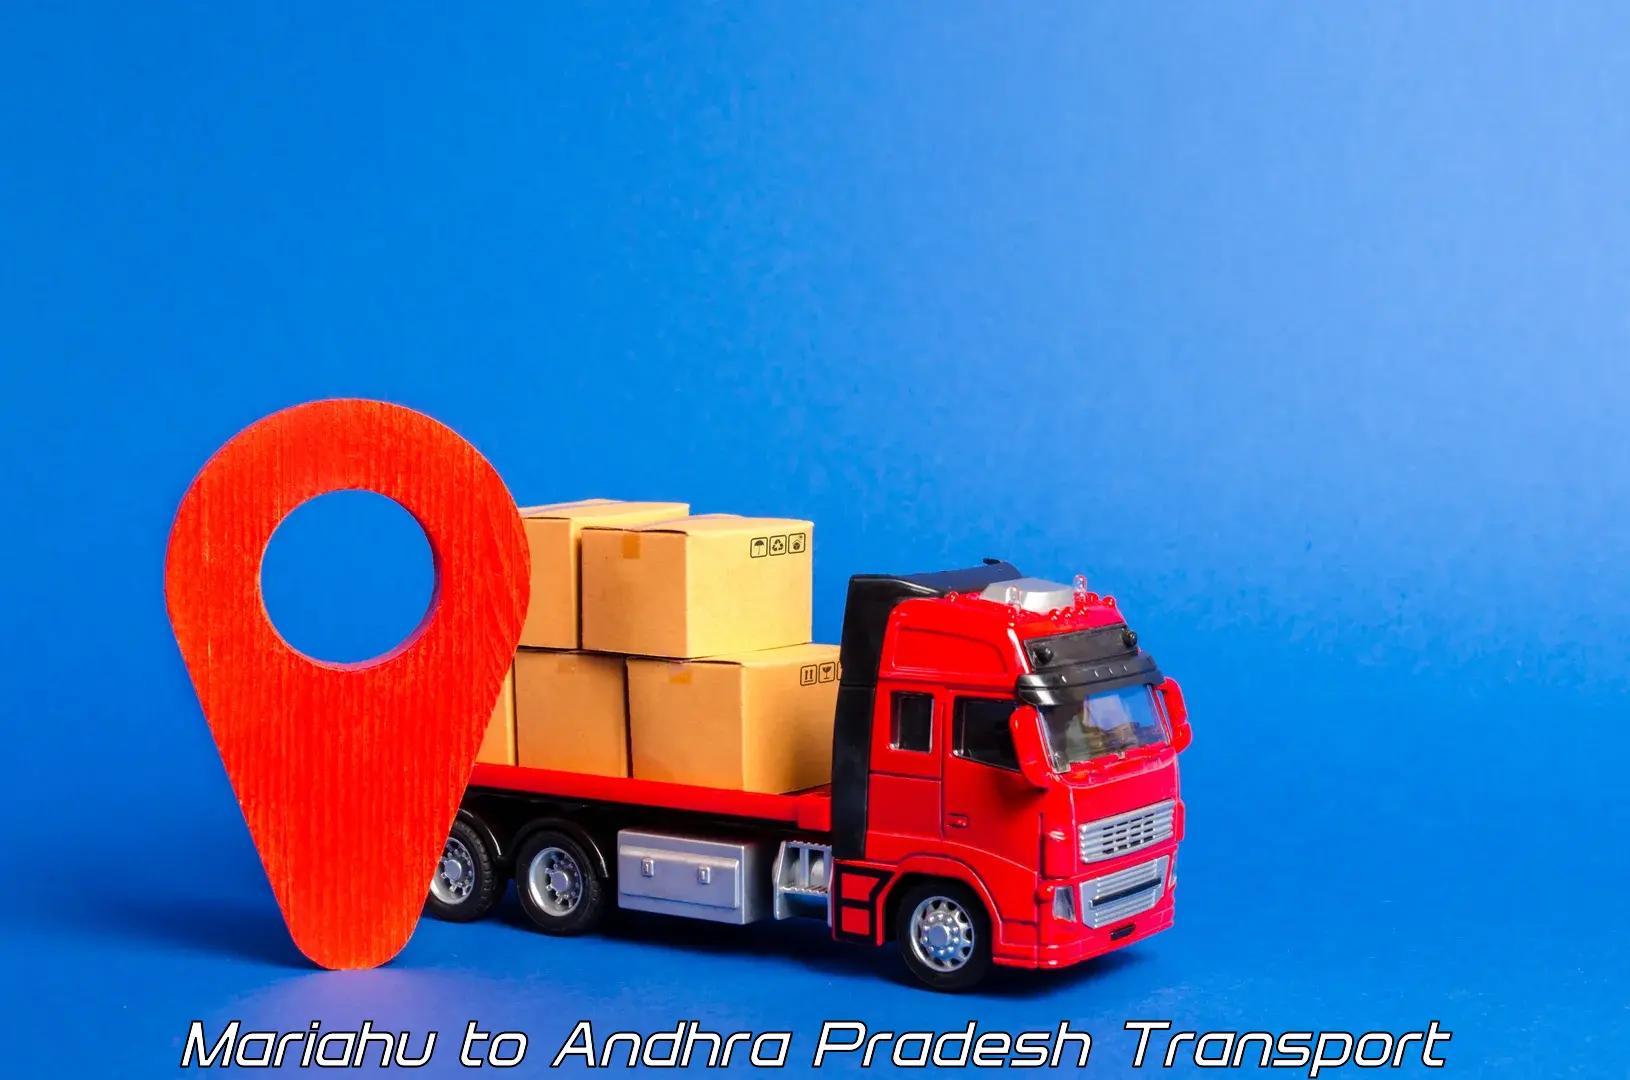 Truck transport companies in India Mariahu to Chillakallu